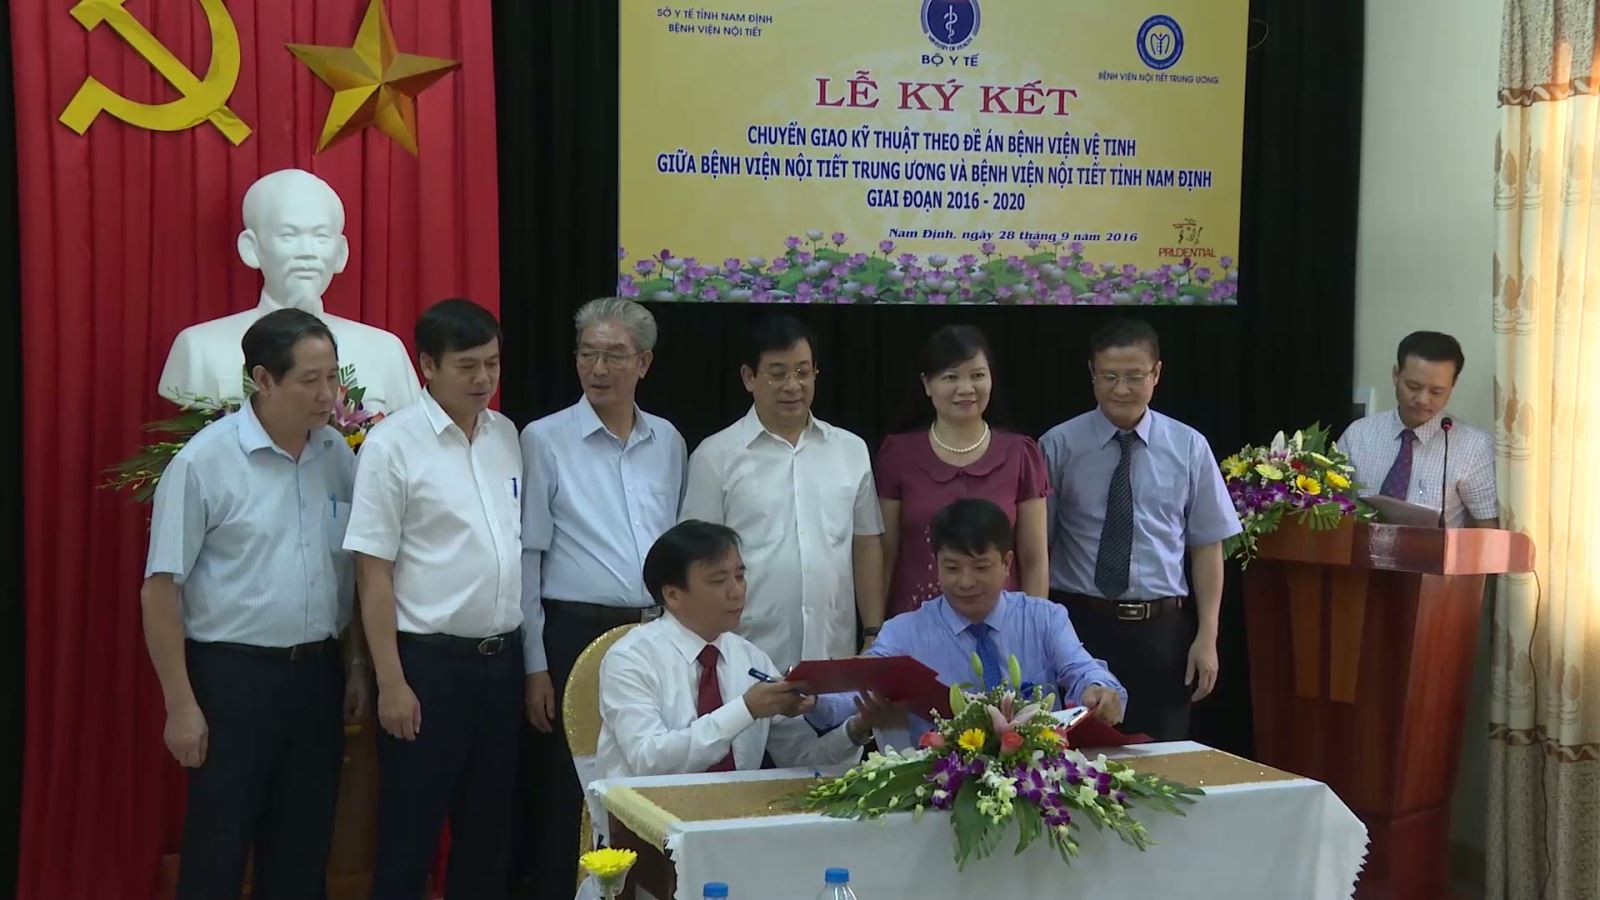 Lễ ký kết chuyển giao kỹ thuật giữa Bệnh viện Nội tiết Trung ương và Bệnh viện Nội tiết Nam Định